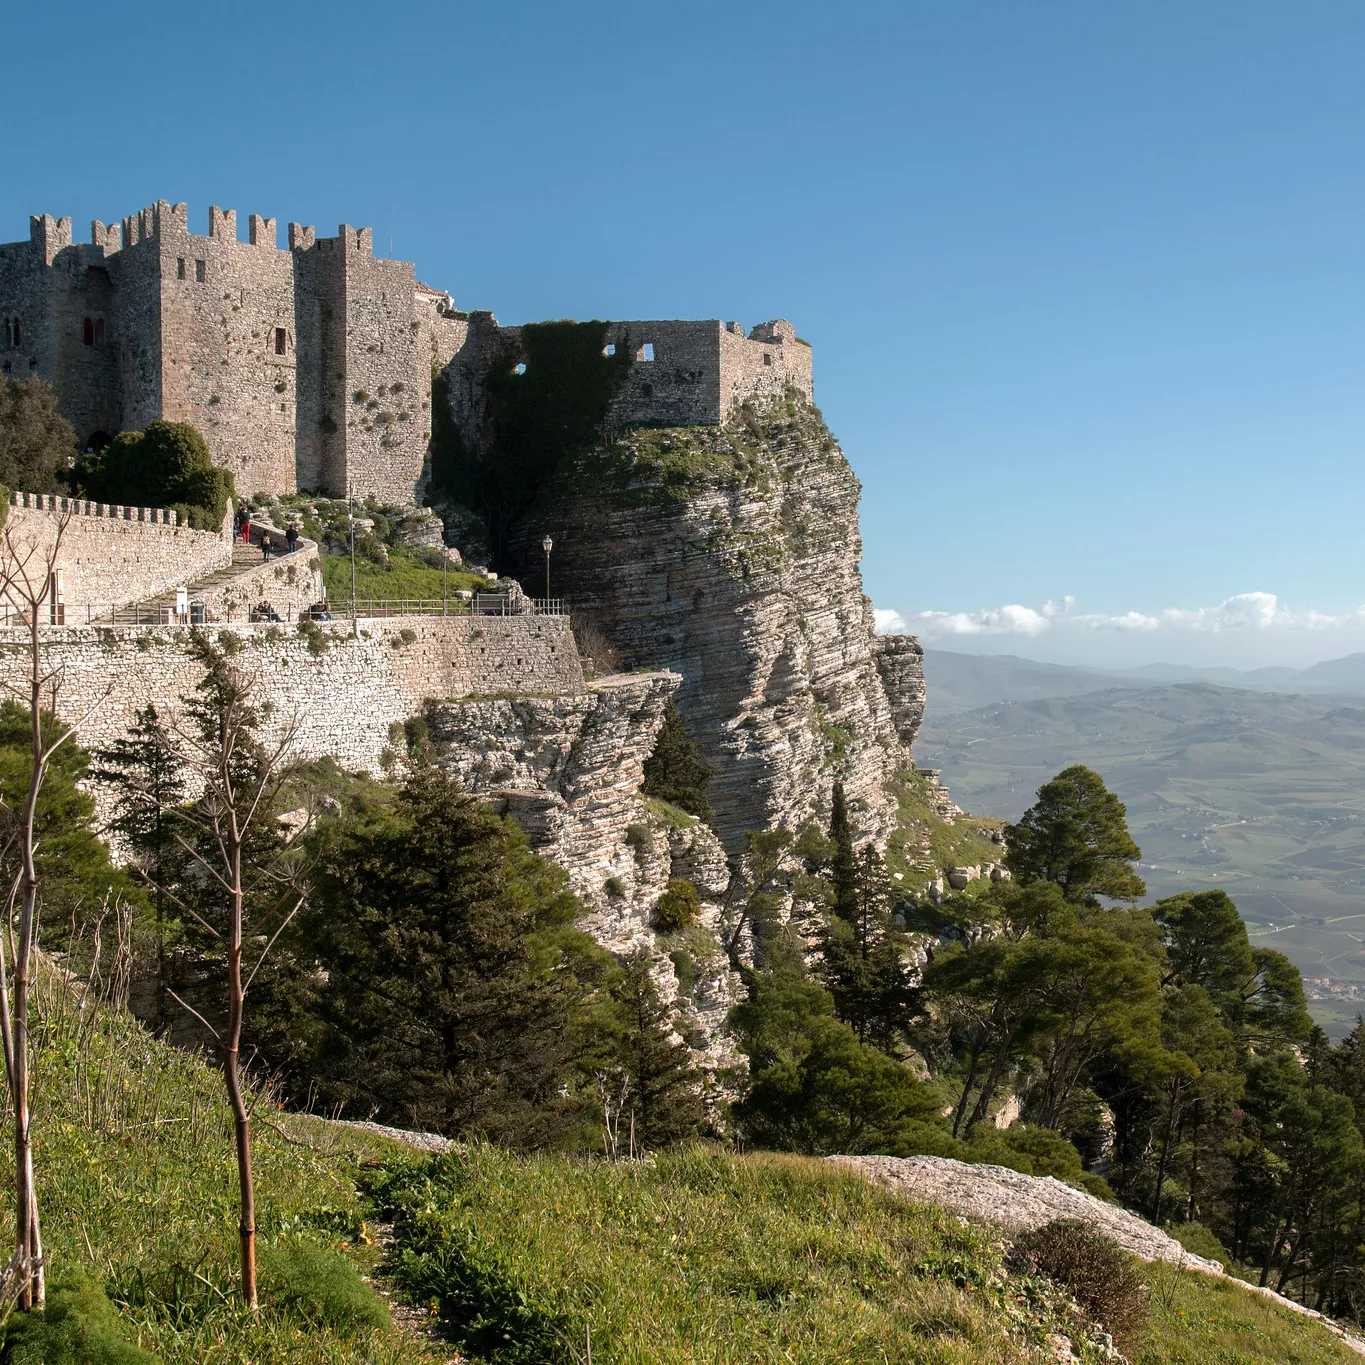 The Castello di Venere